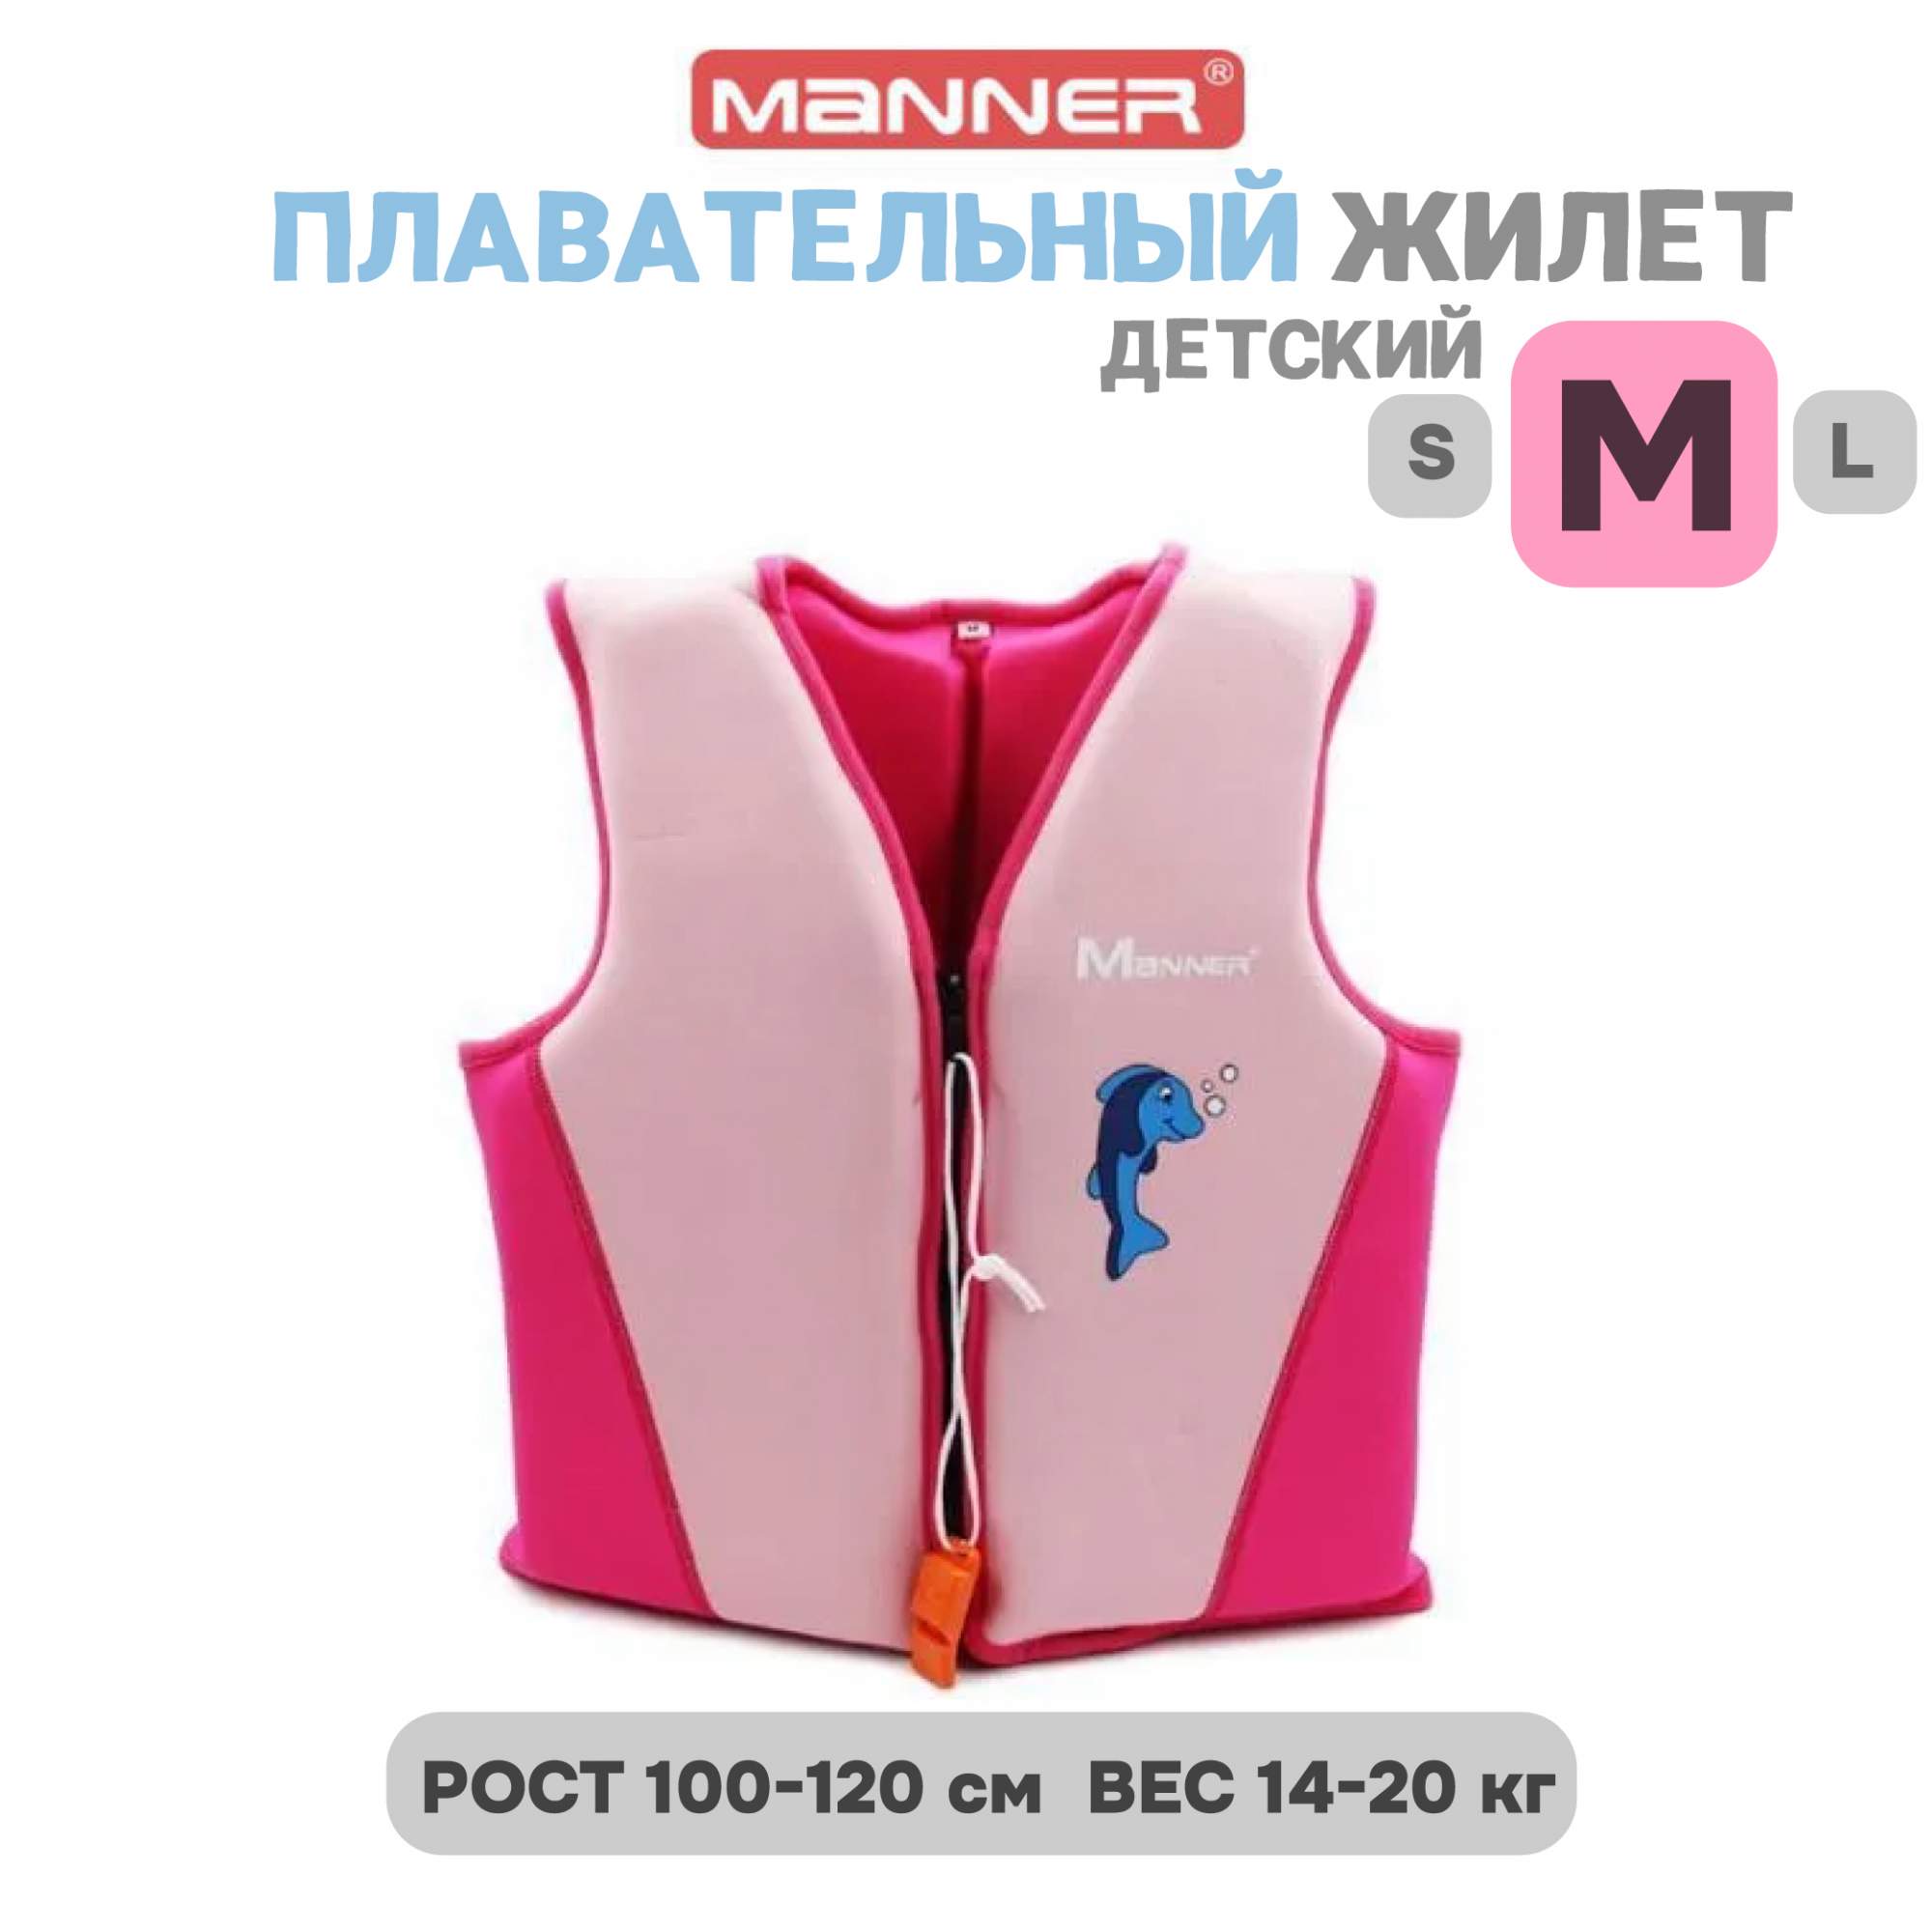 Гидрожилет Manner M до 20 кг, розовый - купить в Москве, цены на Мегамаркет | 600017319511